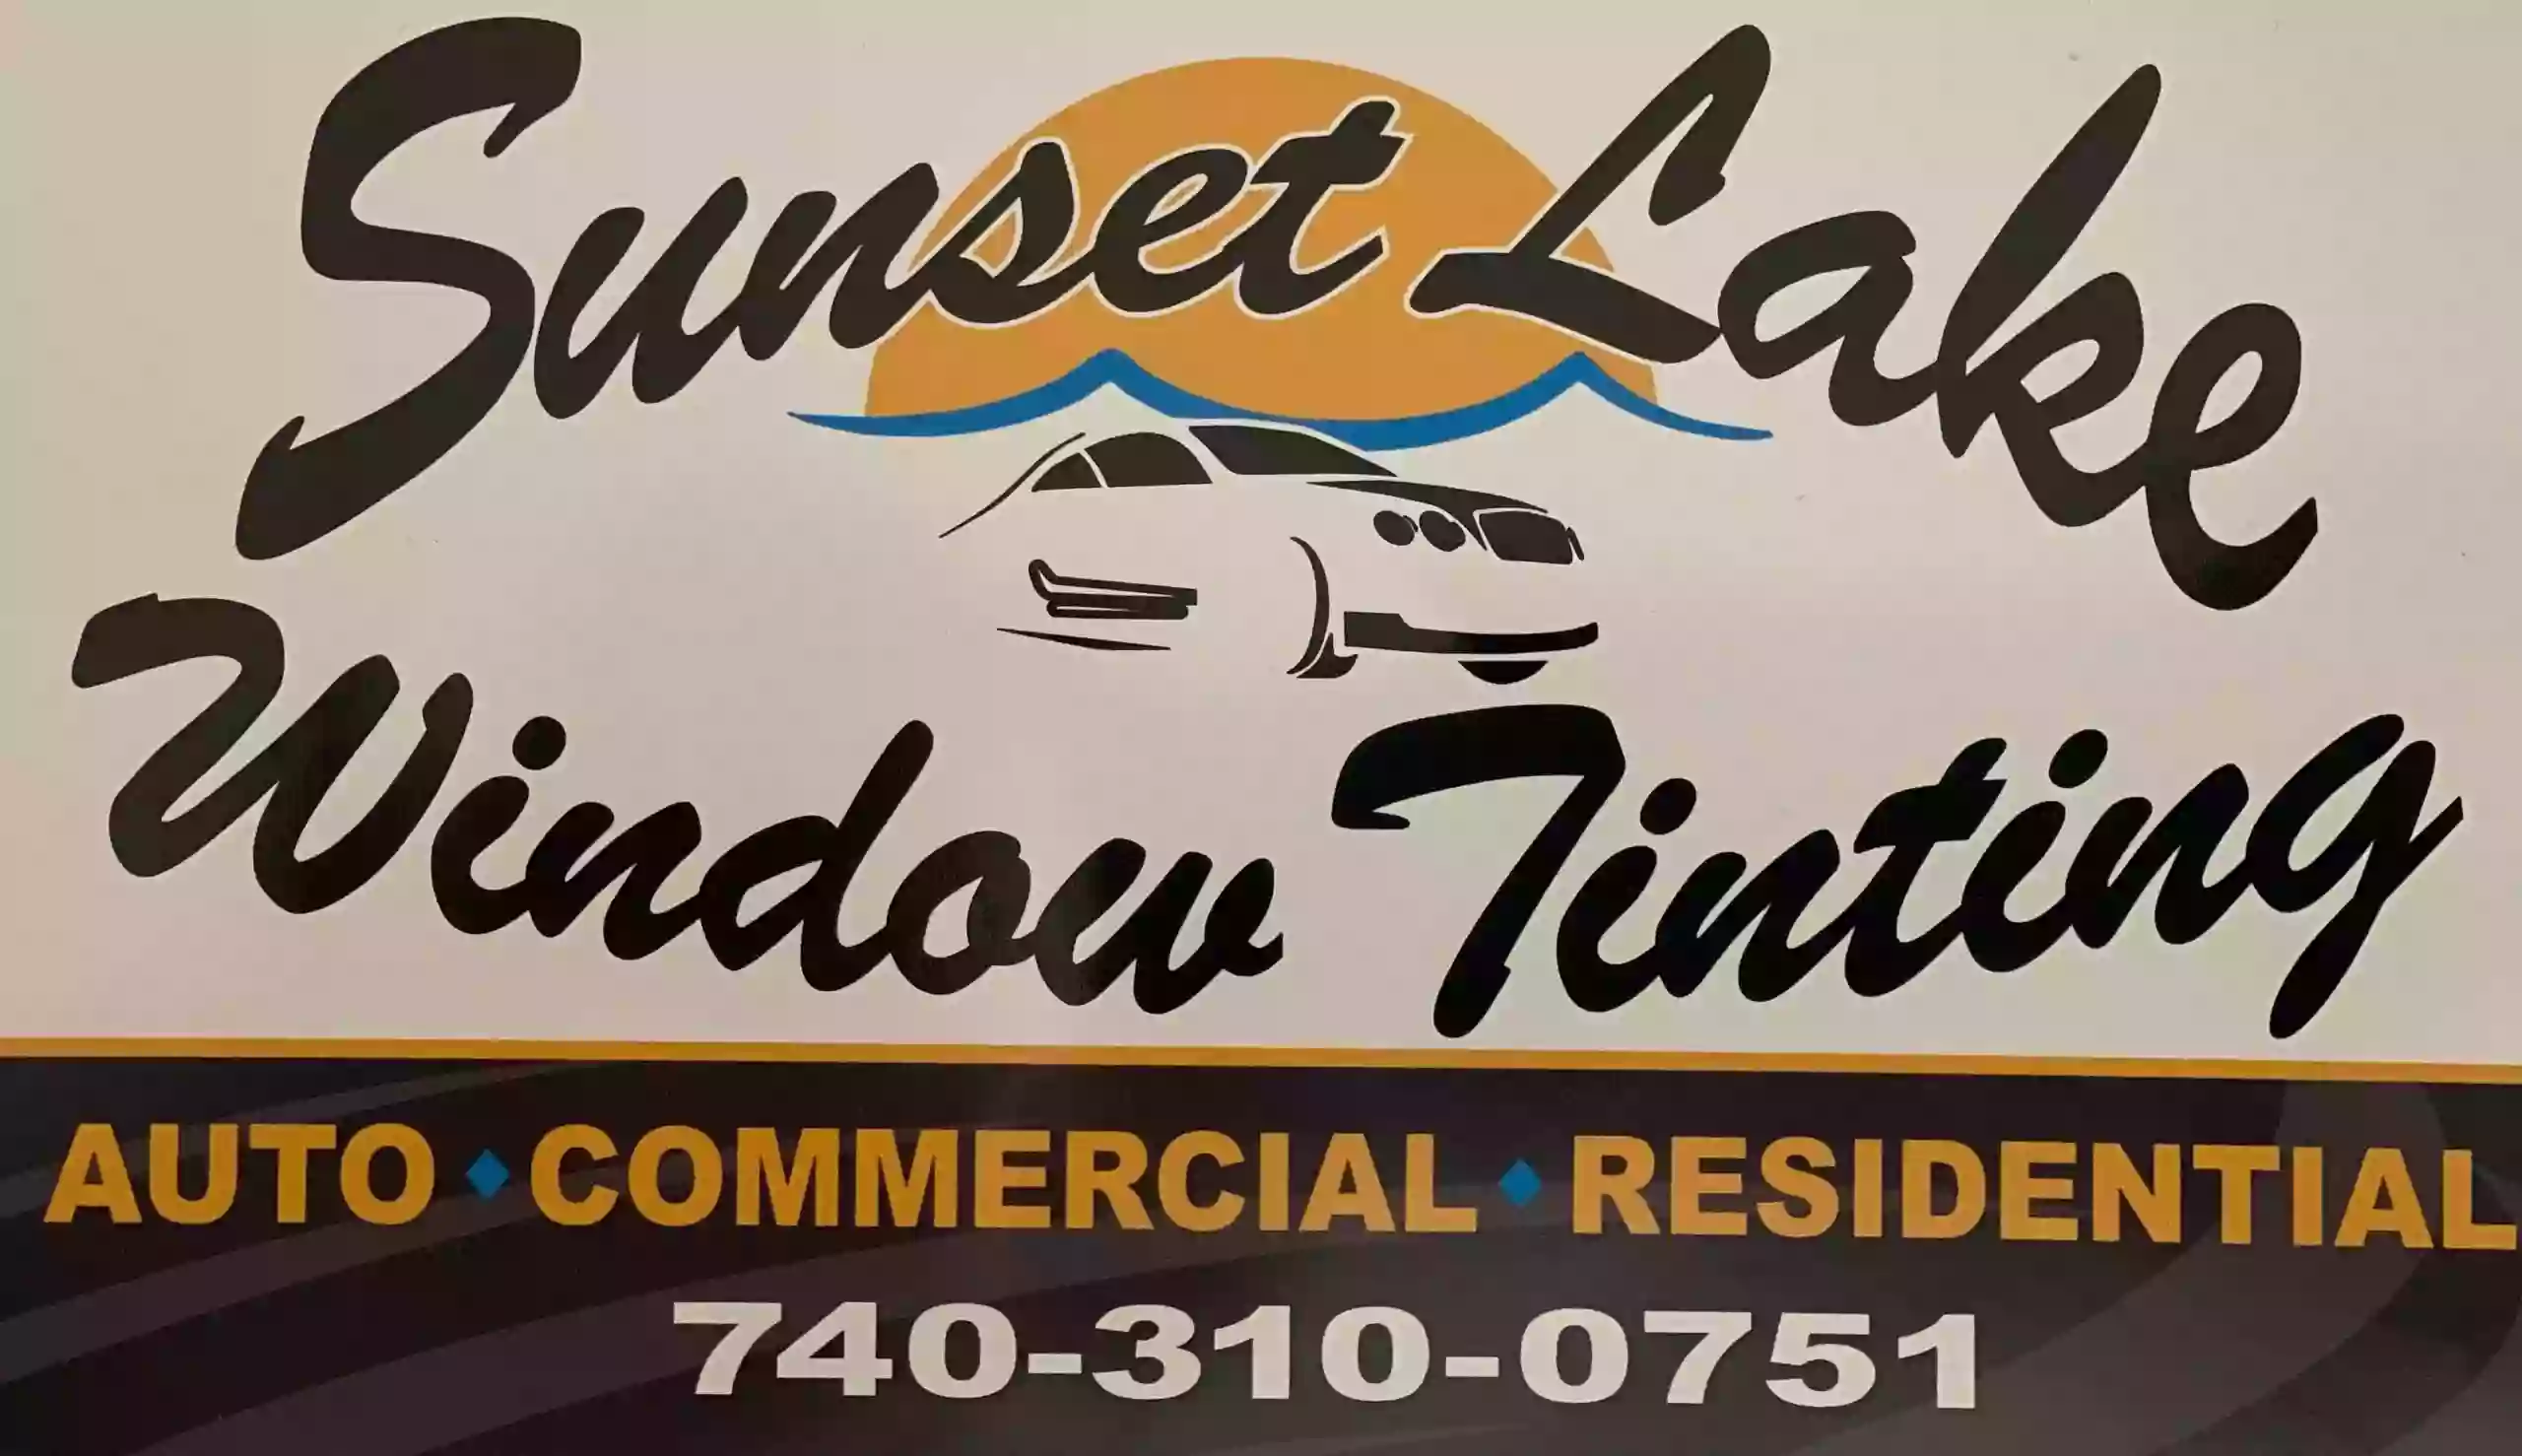 Sunset Lake Window Tinting, LLC.